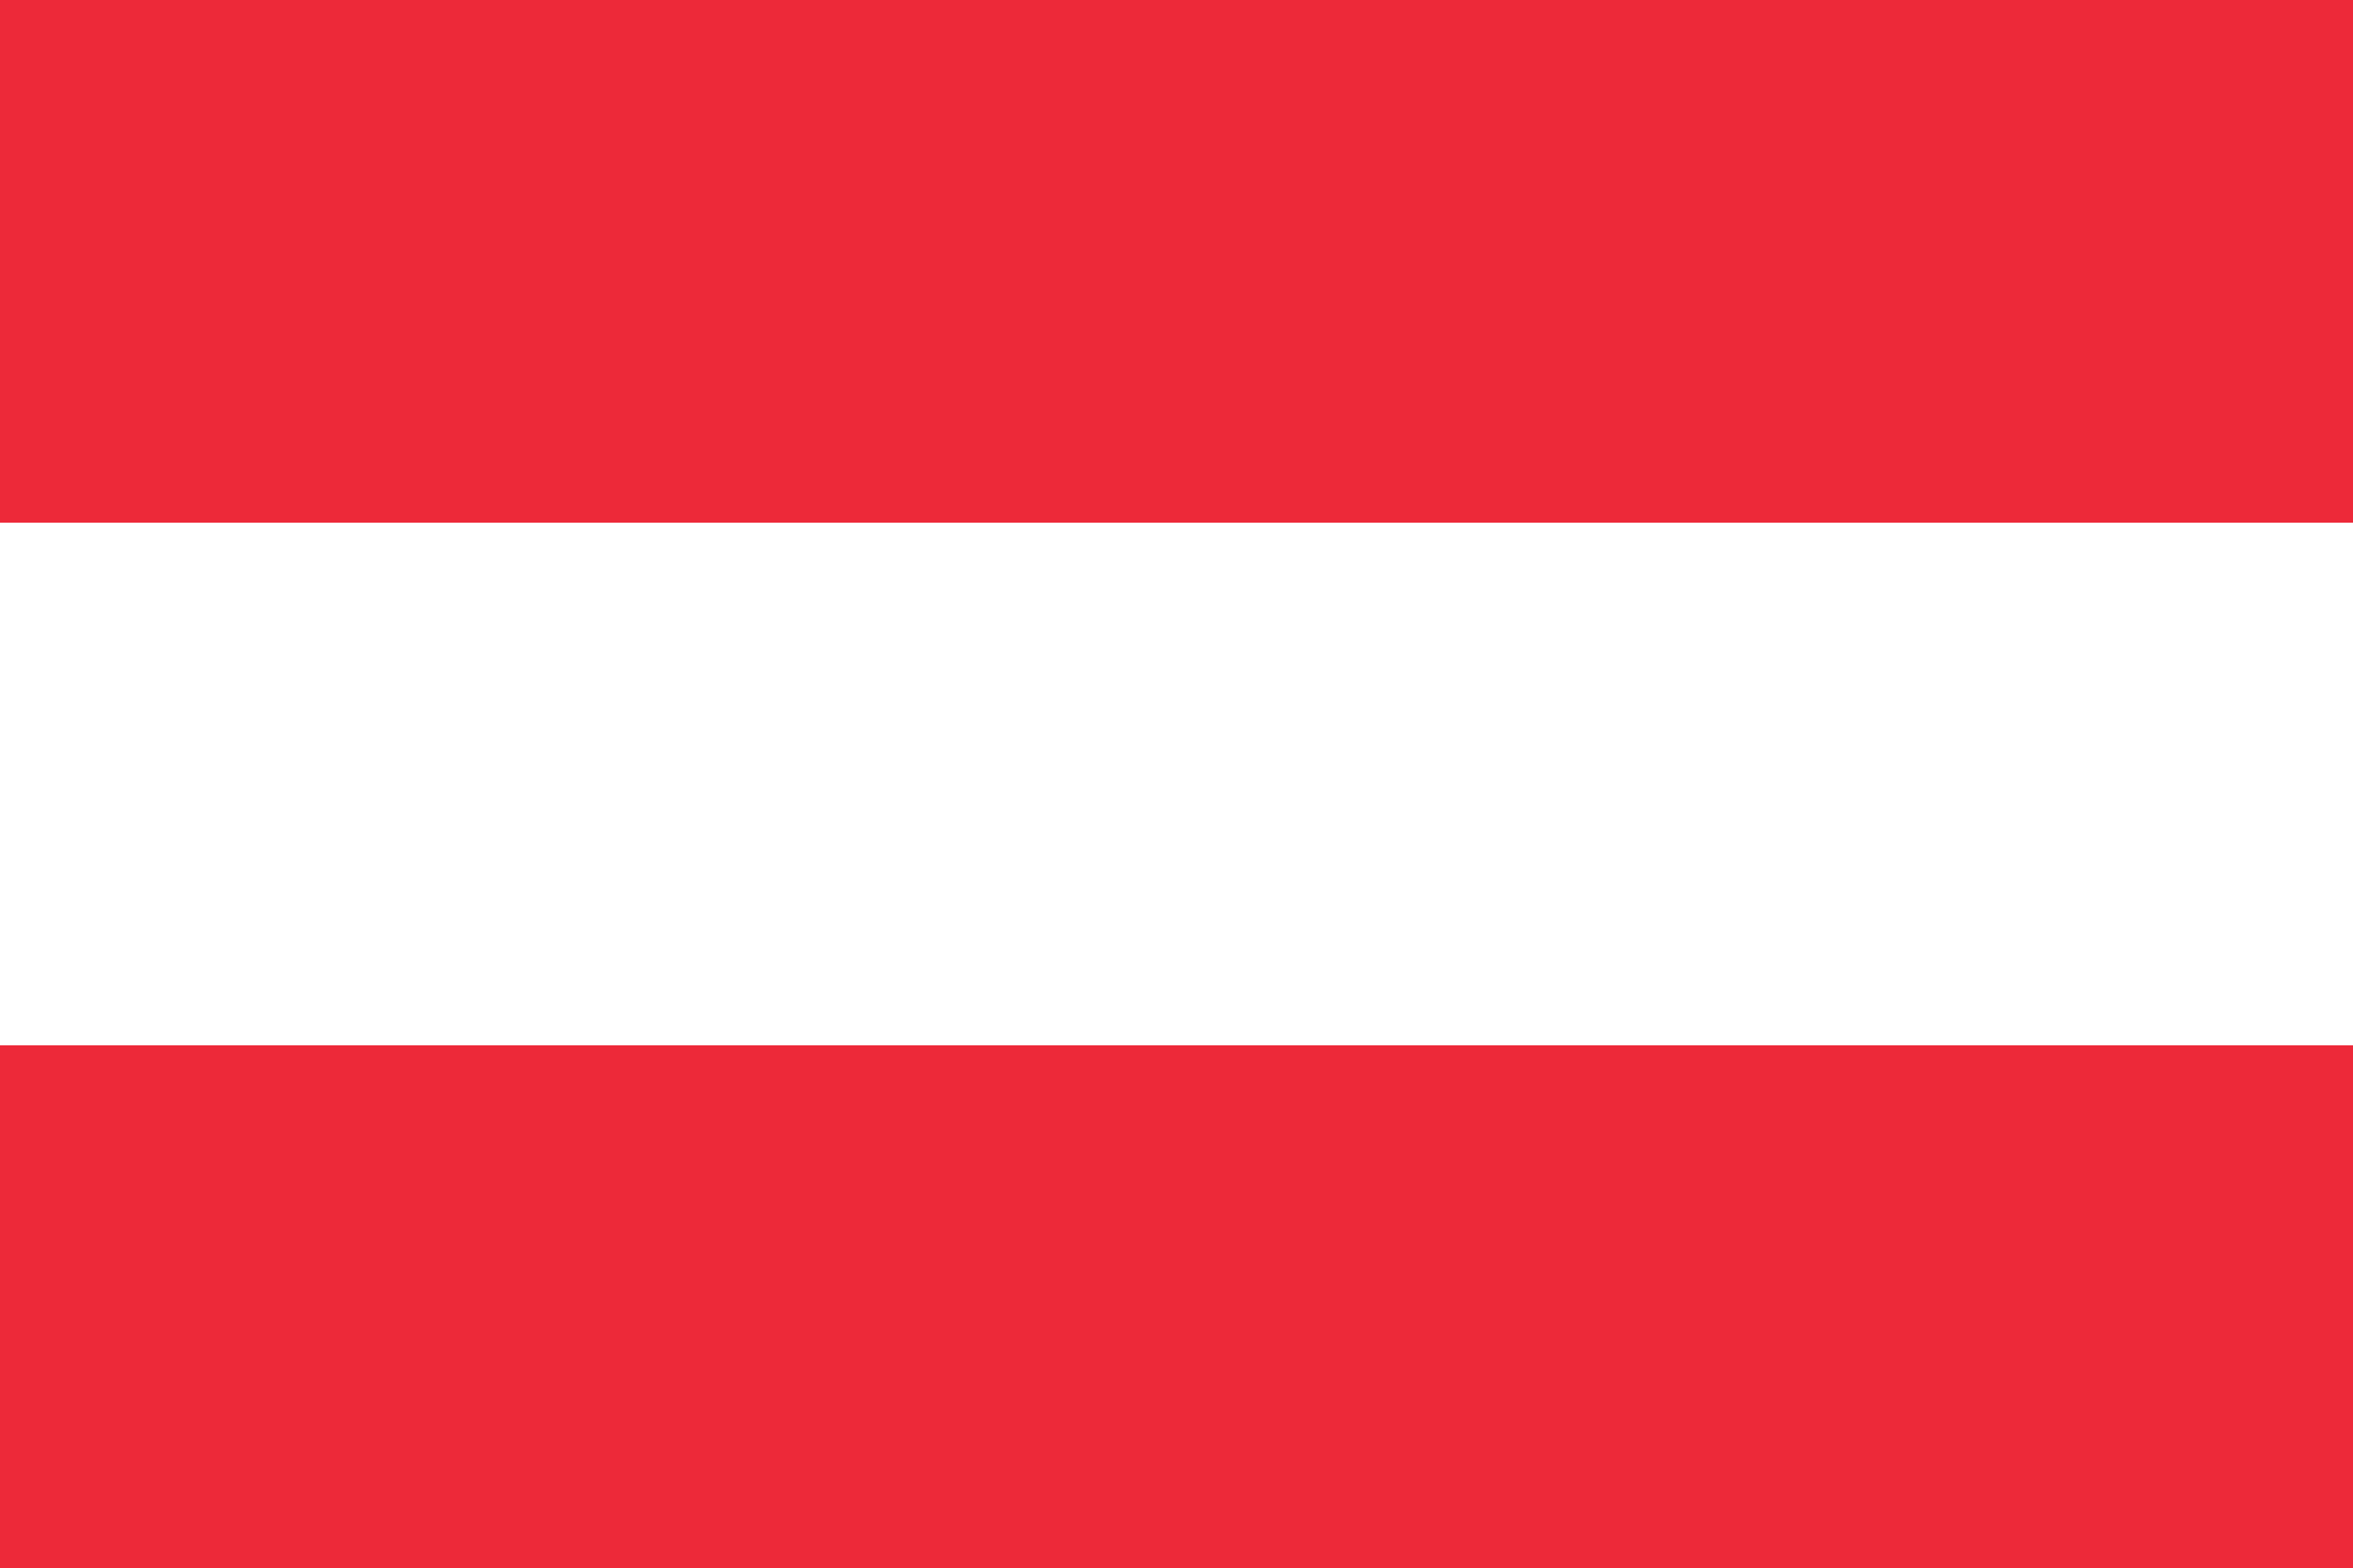 Austria flag vector